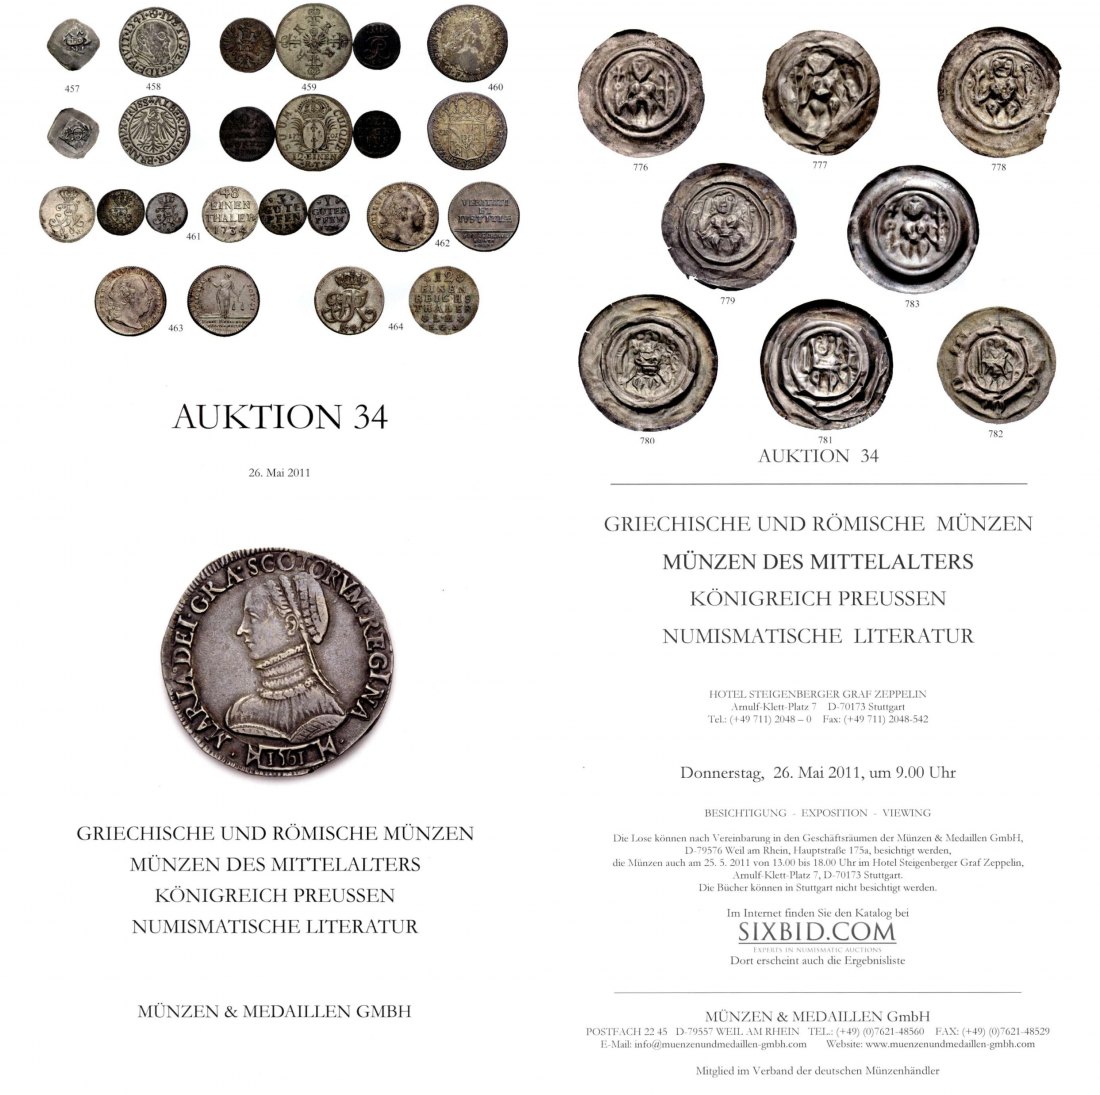  M & M GMBH Weil am Rhein 34 (2011) Große Serie Münzen des Mittelalters ,Sammlung Königreich Preussen   